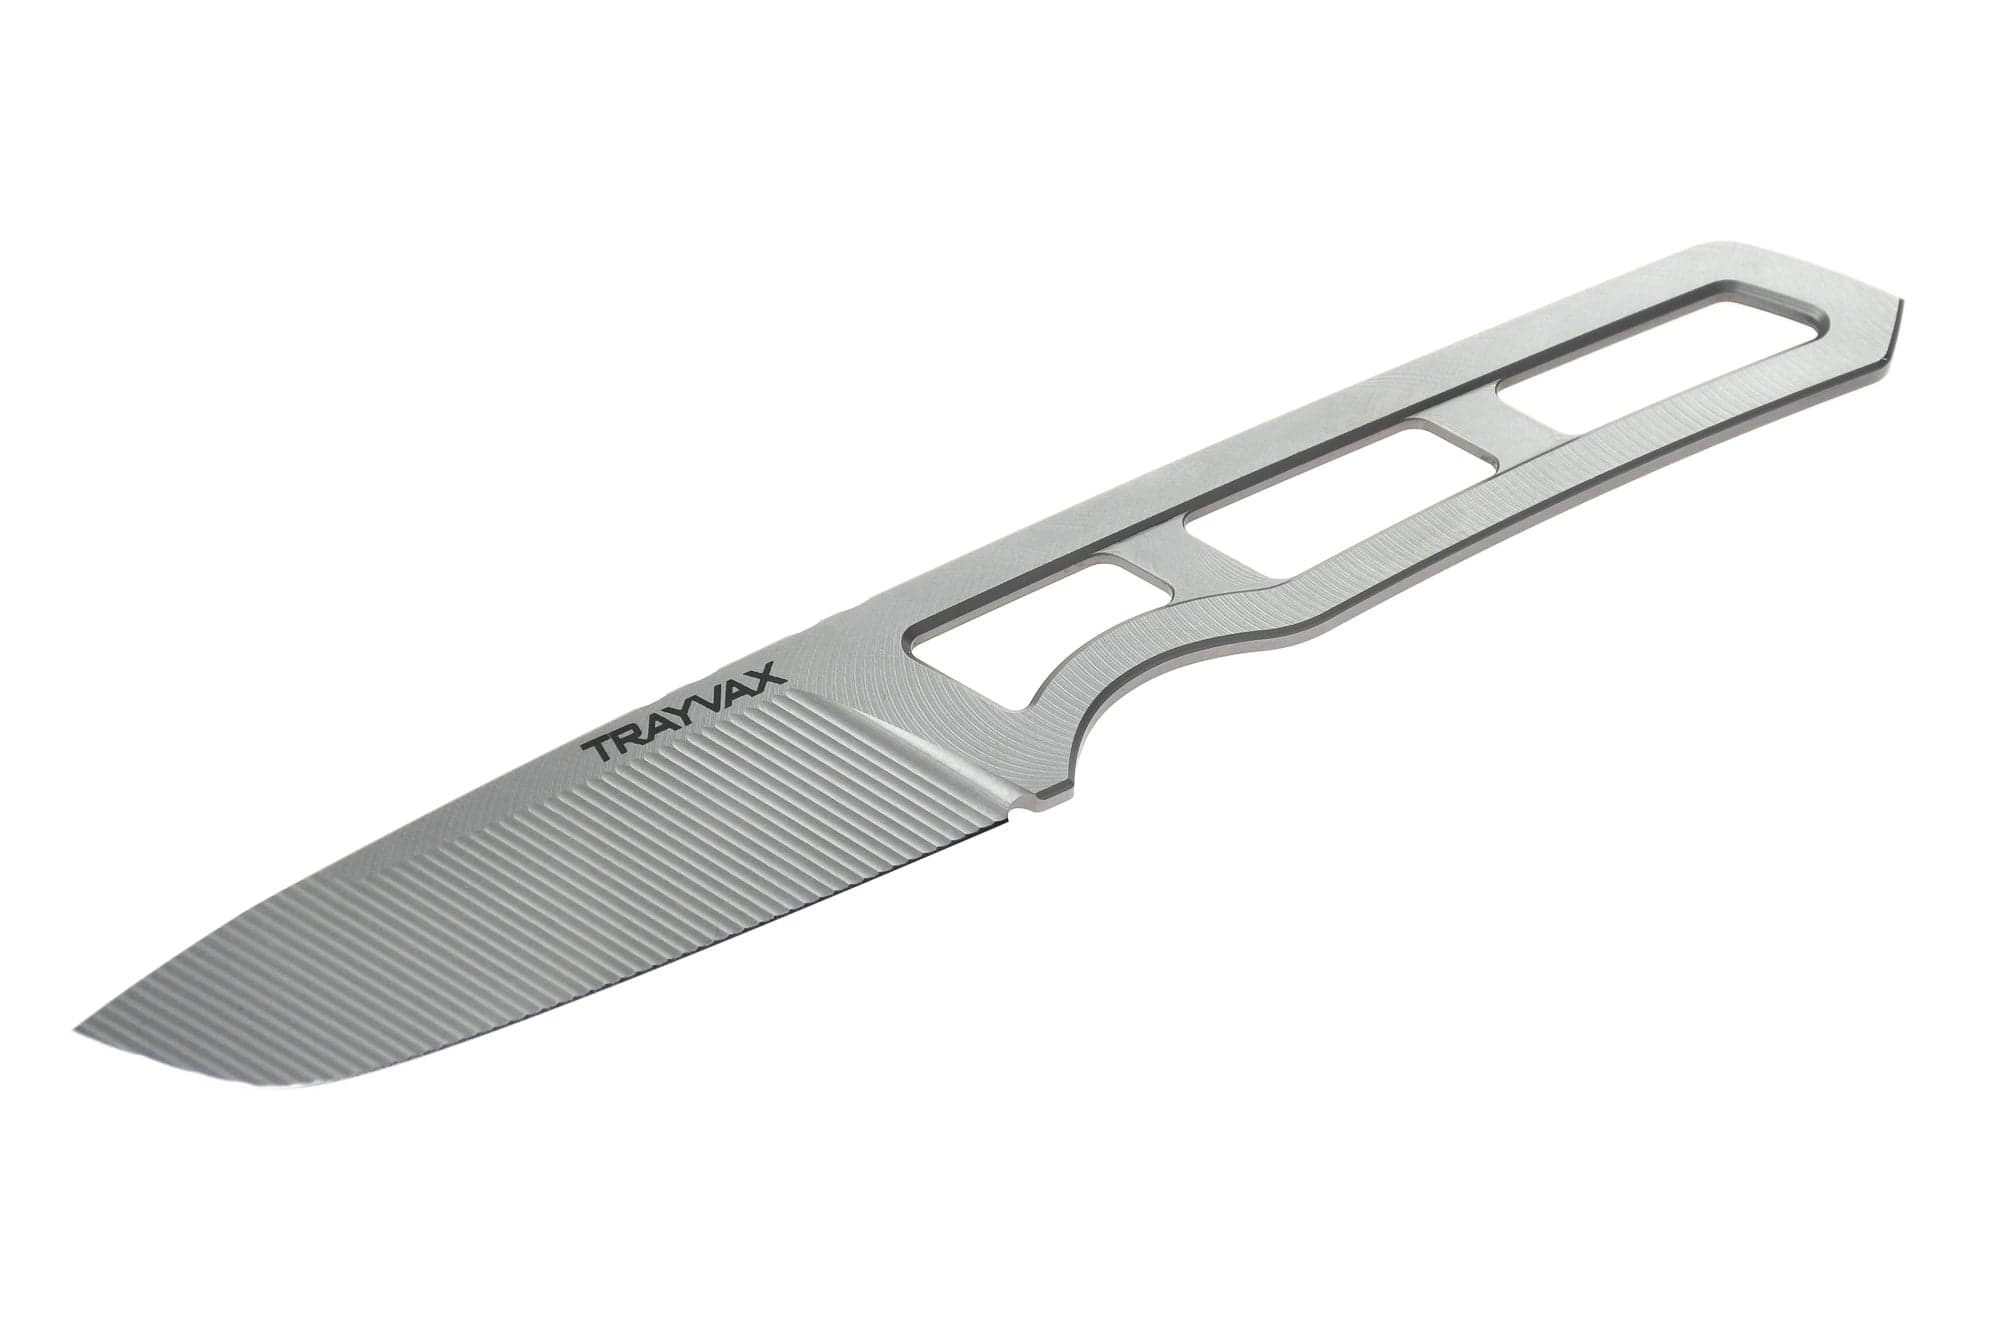 Trayvax Enterprises Knife Trayvax Trek Field Knife